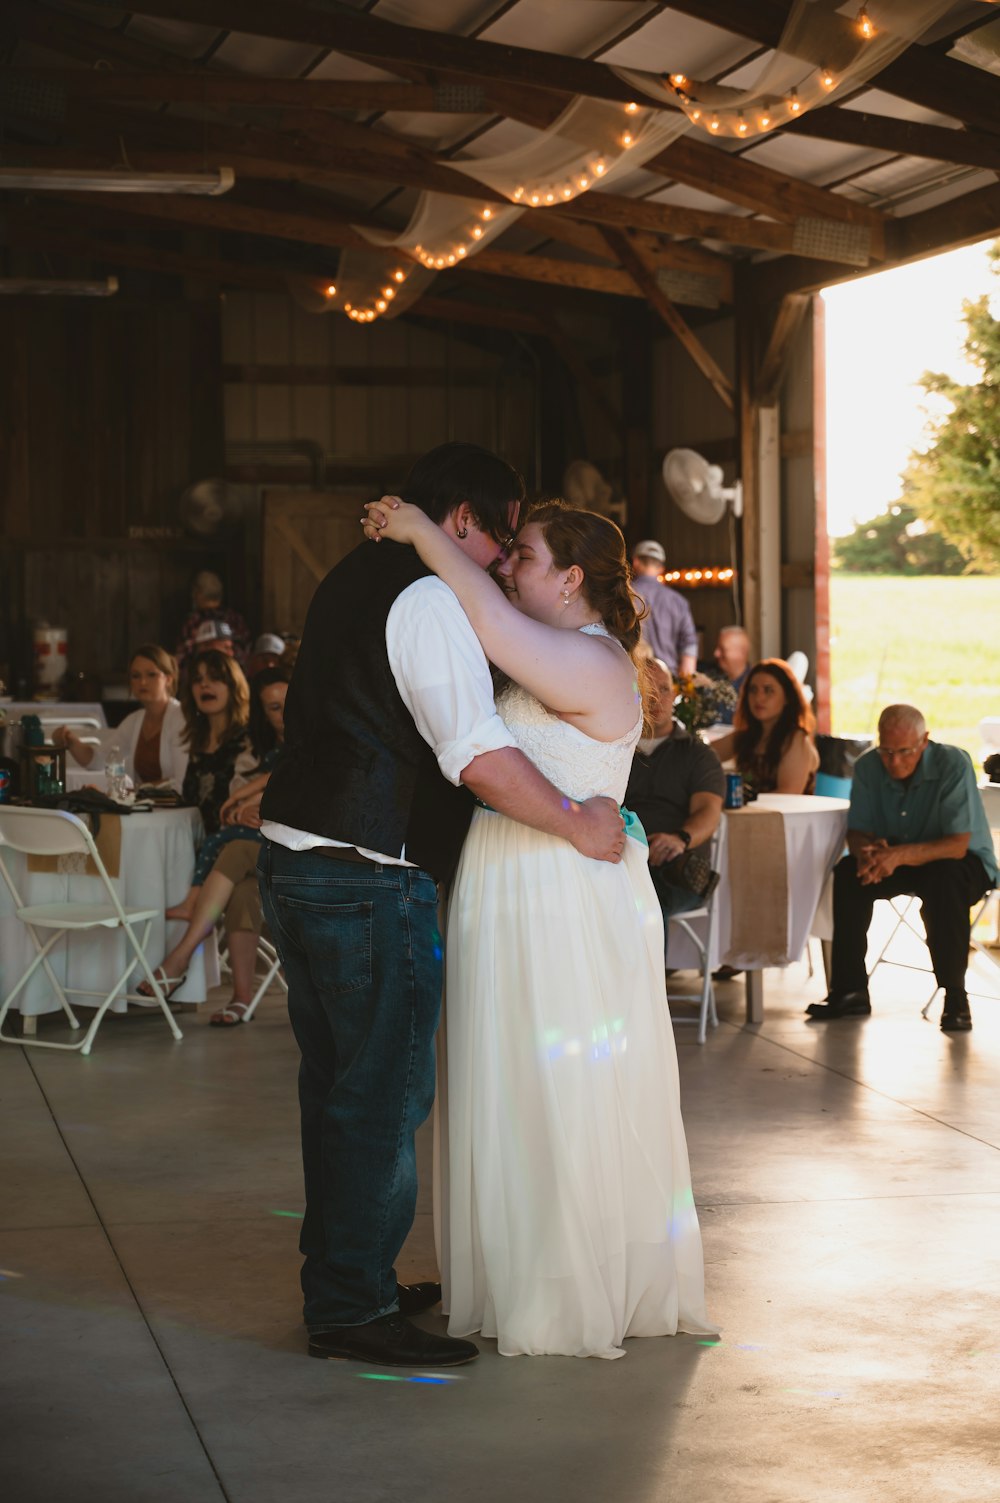 Una novia y un novio compartiendo su primer baile